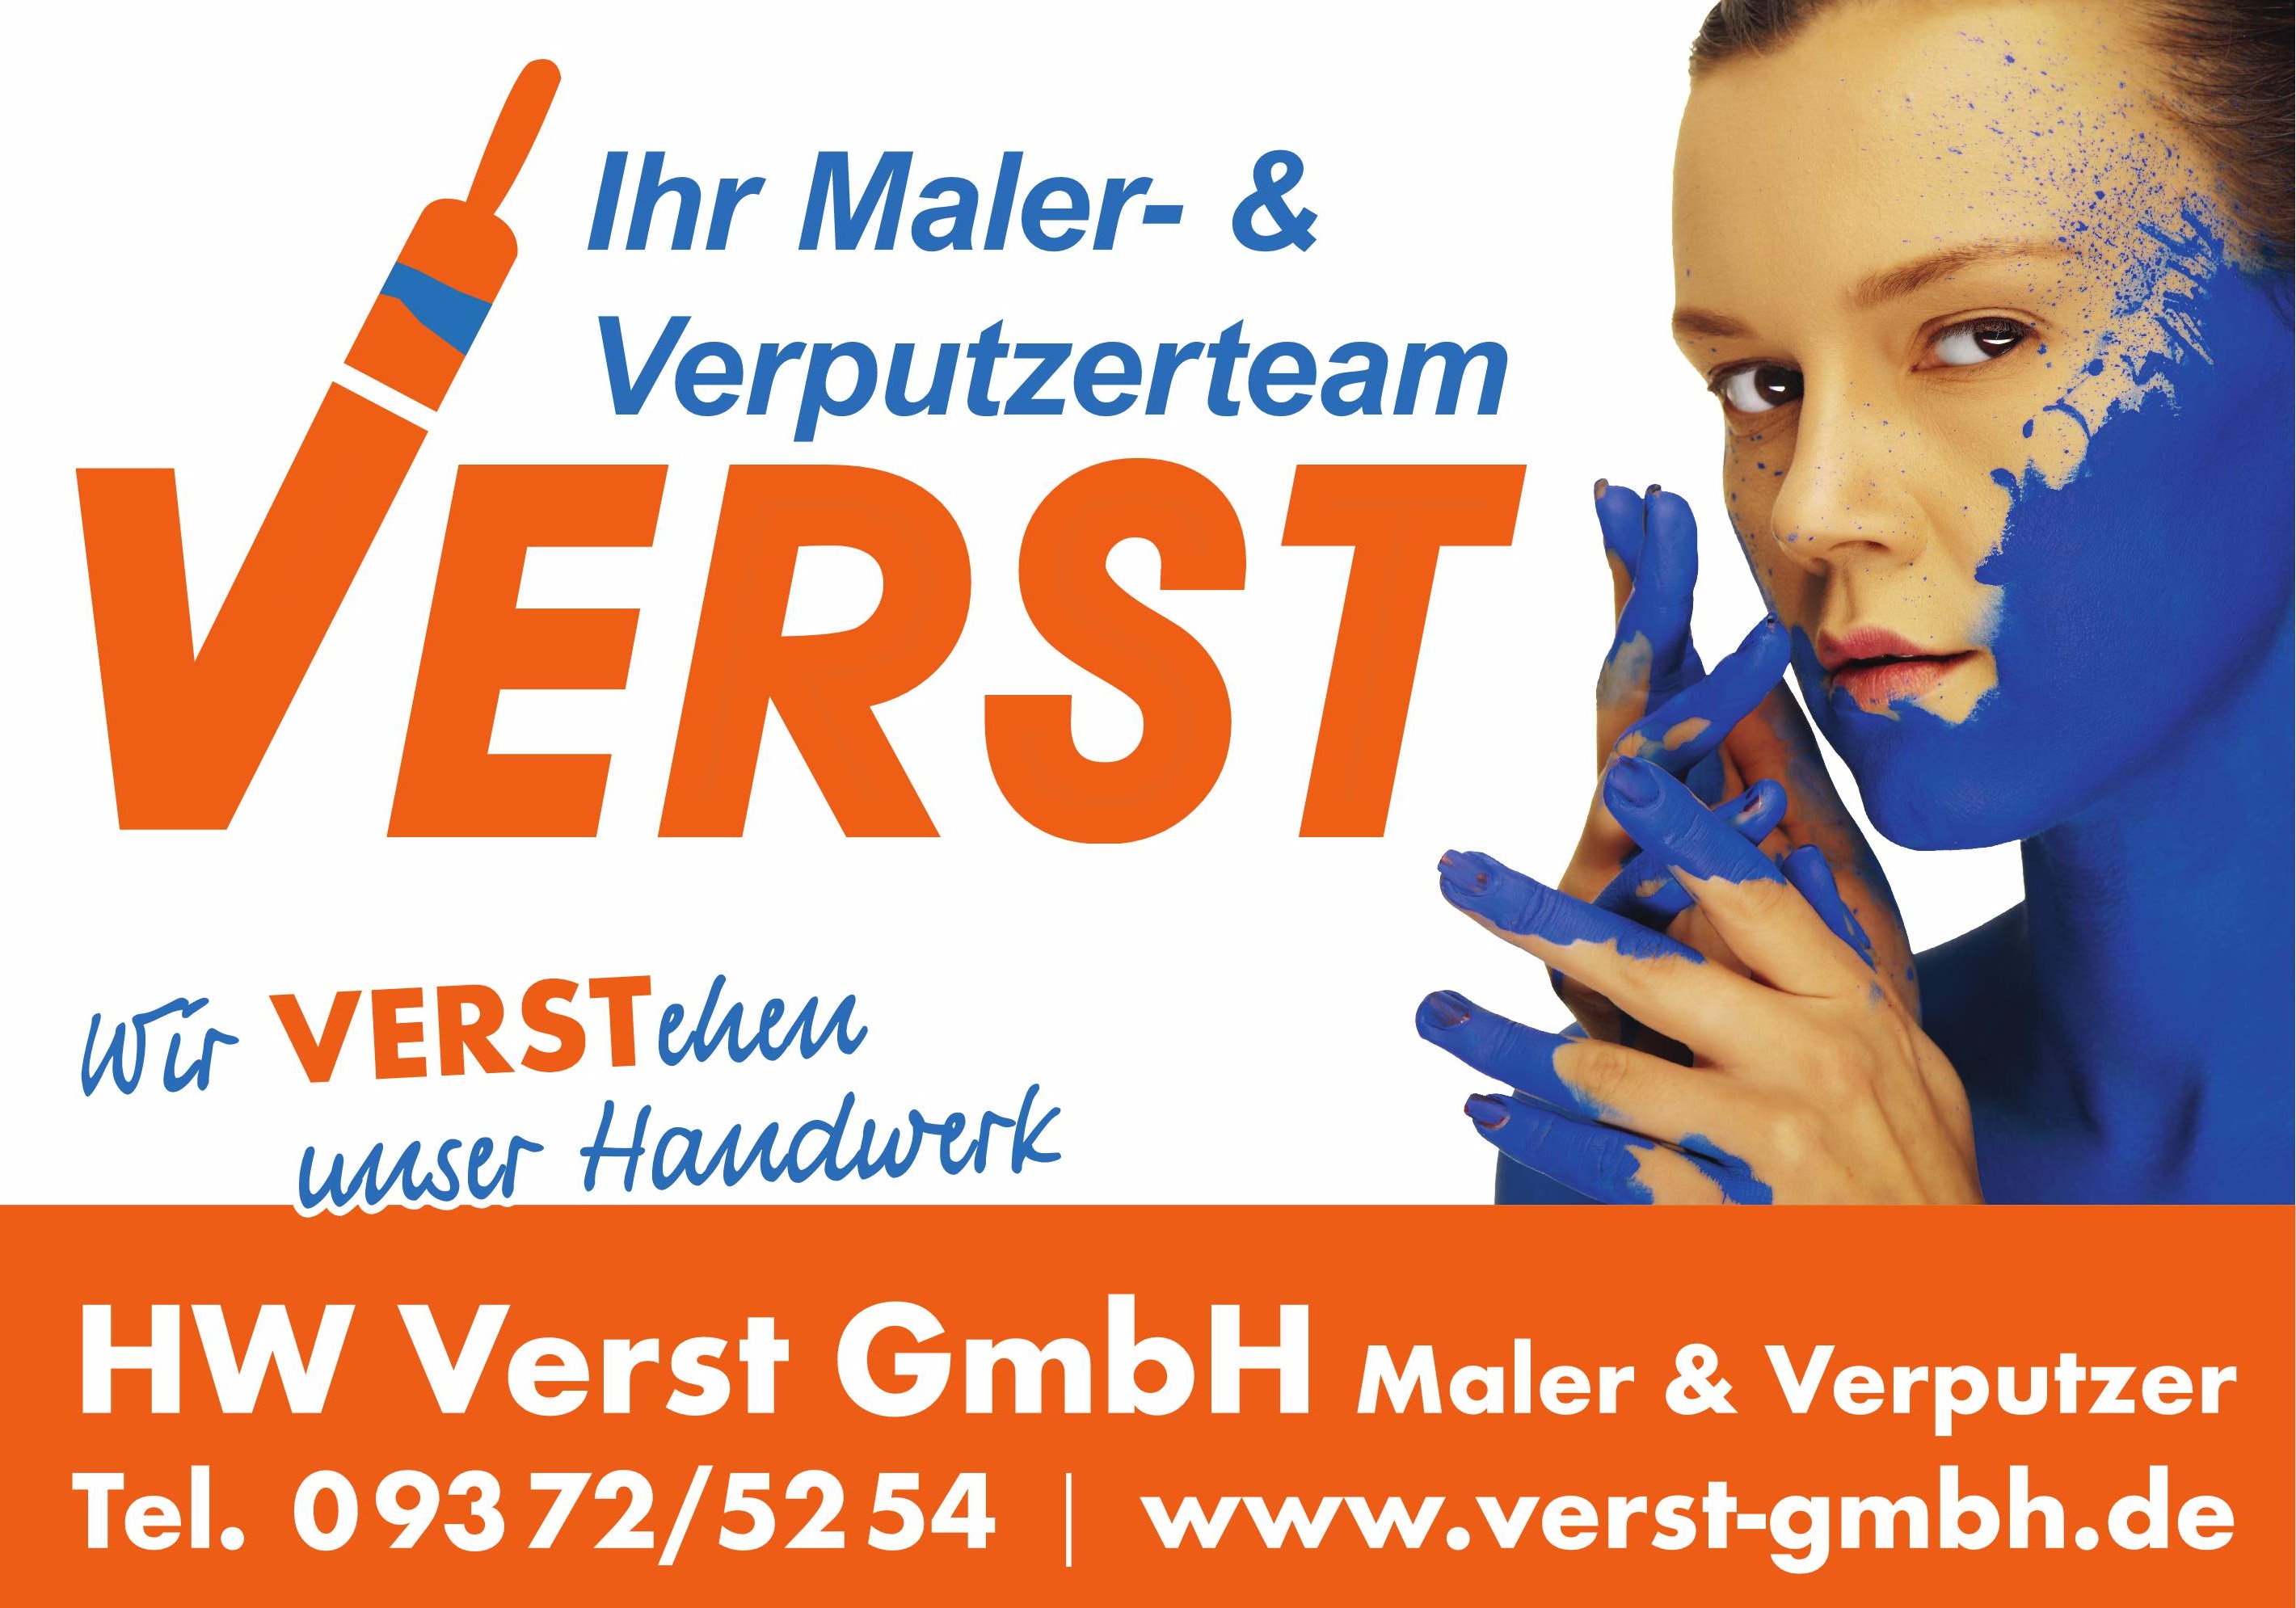 H. und W. Verst GmbH - Maler und Verputzer<br>